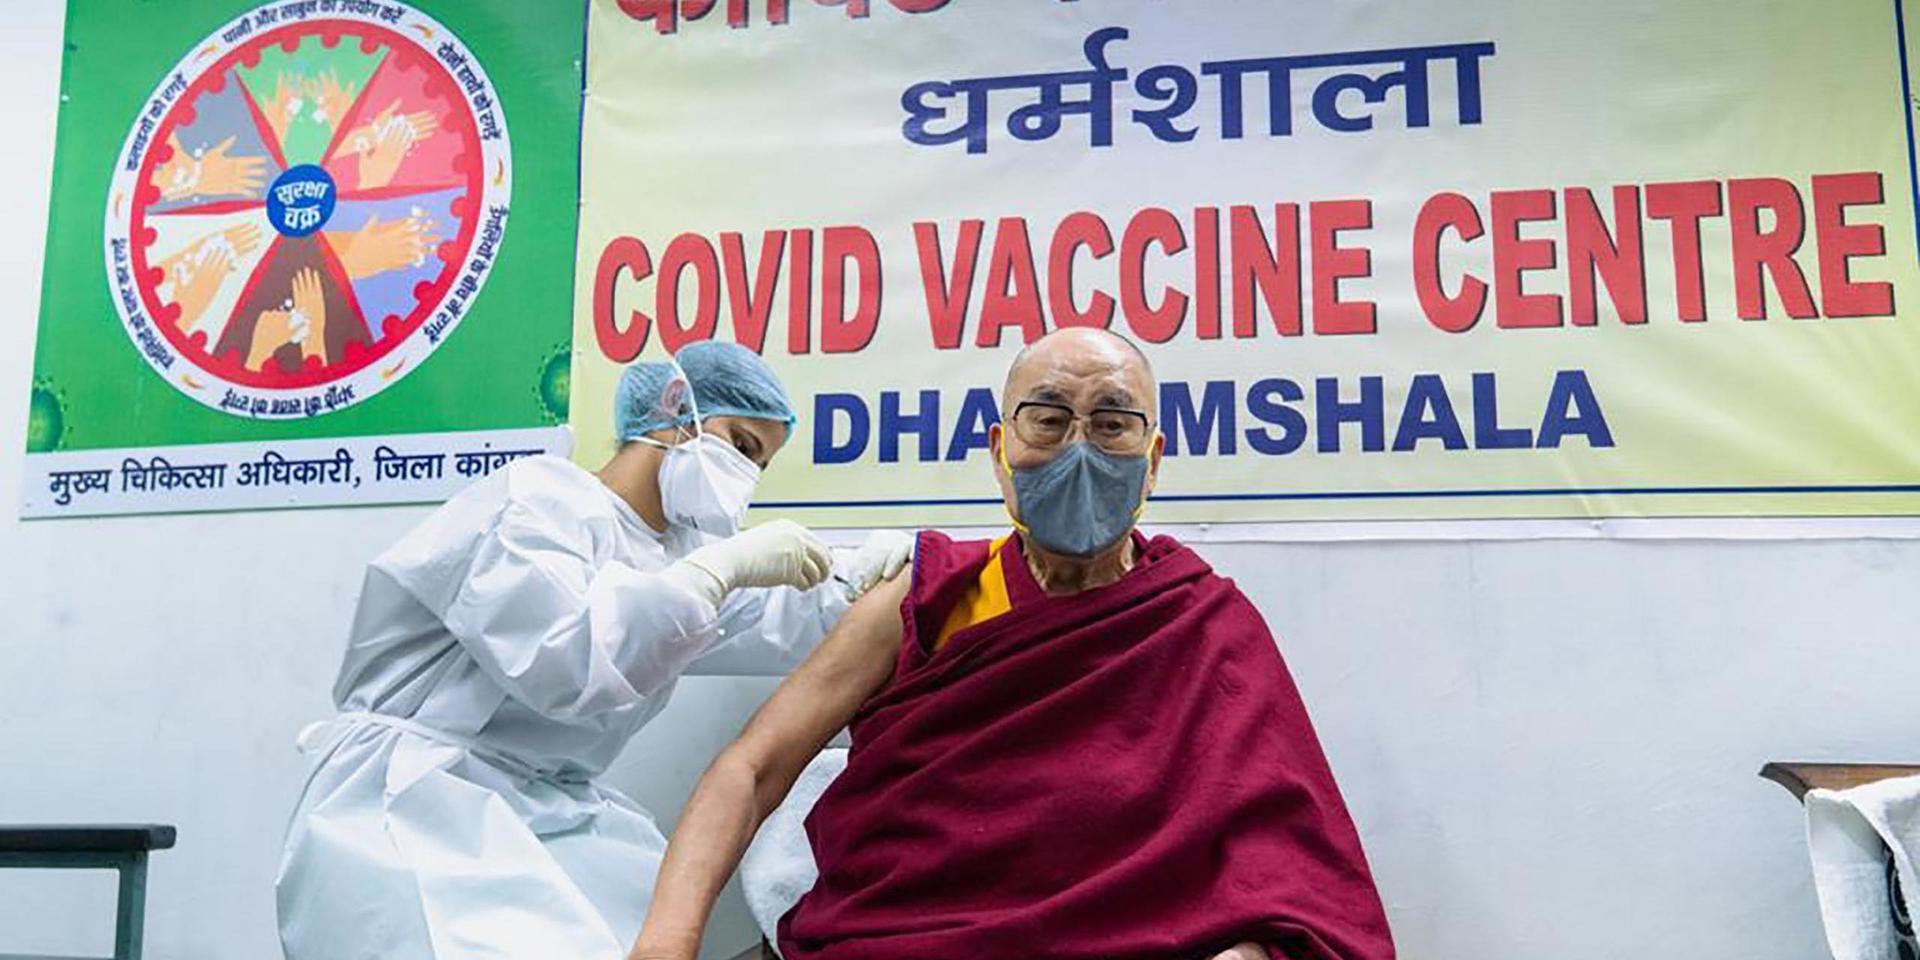 Dala lama får en dos vaccin på ett sjukhus i Dharmsala, Indien.